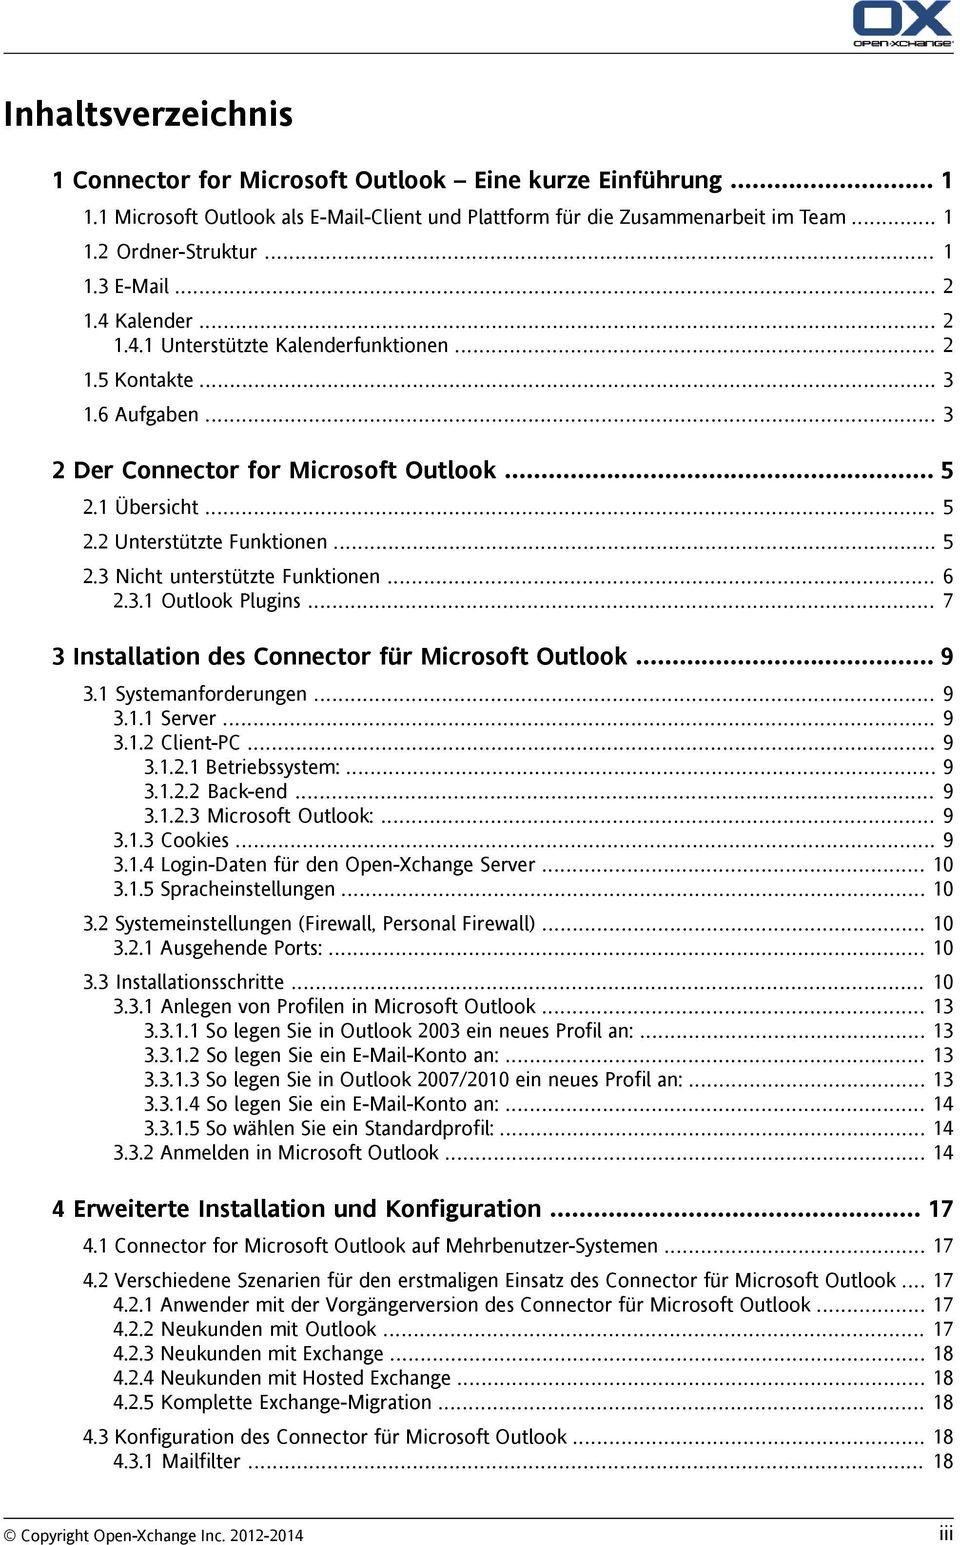 .. 6 2.3.1 Outlook Plugins... 7 3 Installation des Connector für Microsoft Outlook... 9 3.1 Systemanforderungen... 9 3.1.1 Server... 9 3.1.2 Client-PC... 9 3.1.2.1 Betriebssystem:... 9 3.1.2.2 Back-end.